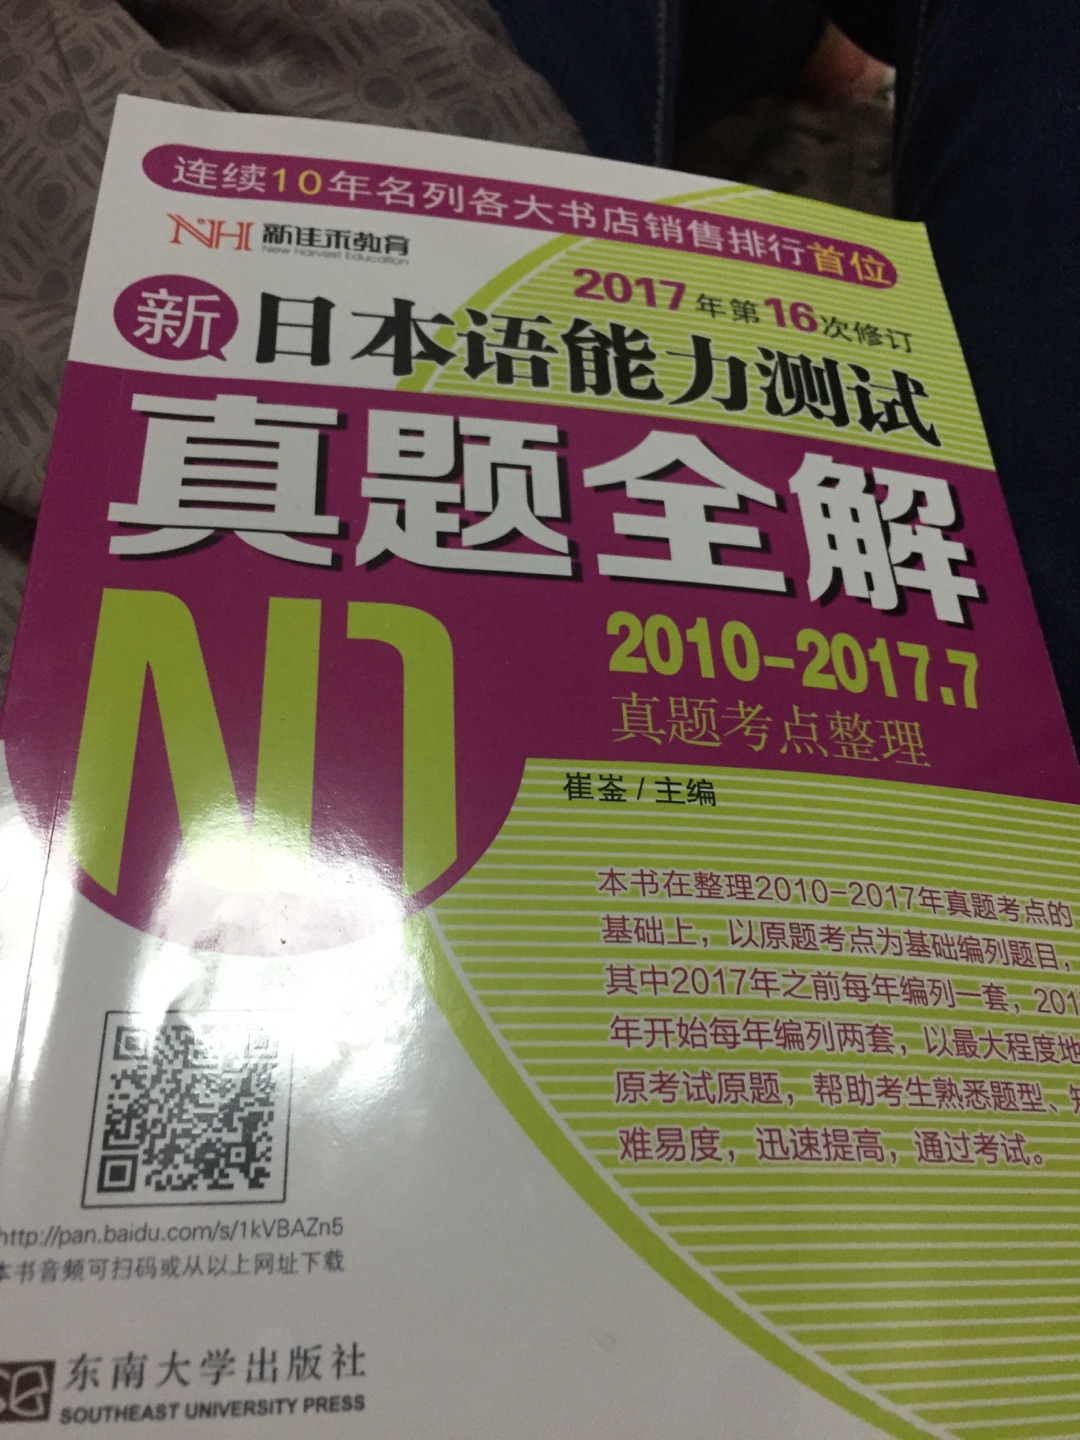 很实用的一本书，又找回了当年学习日语的感觉，会坚持下去